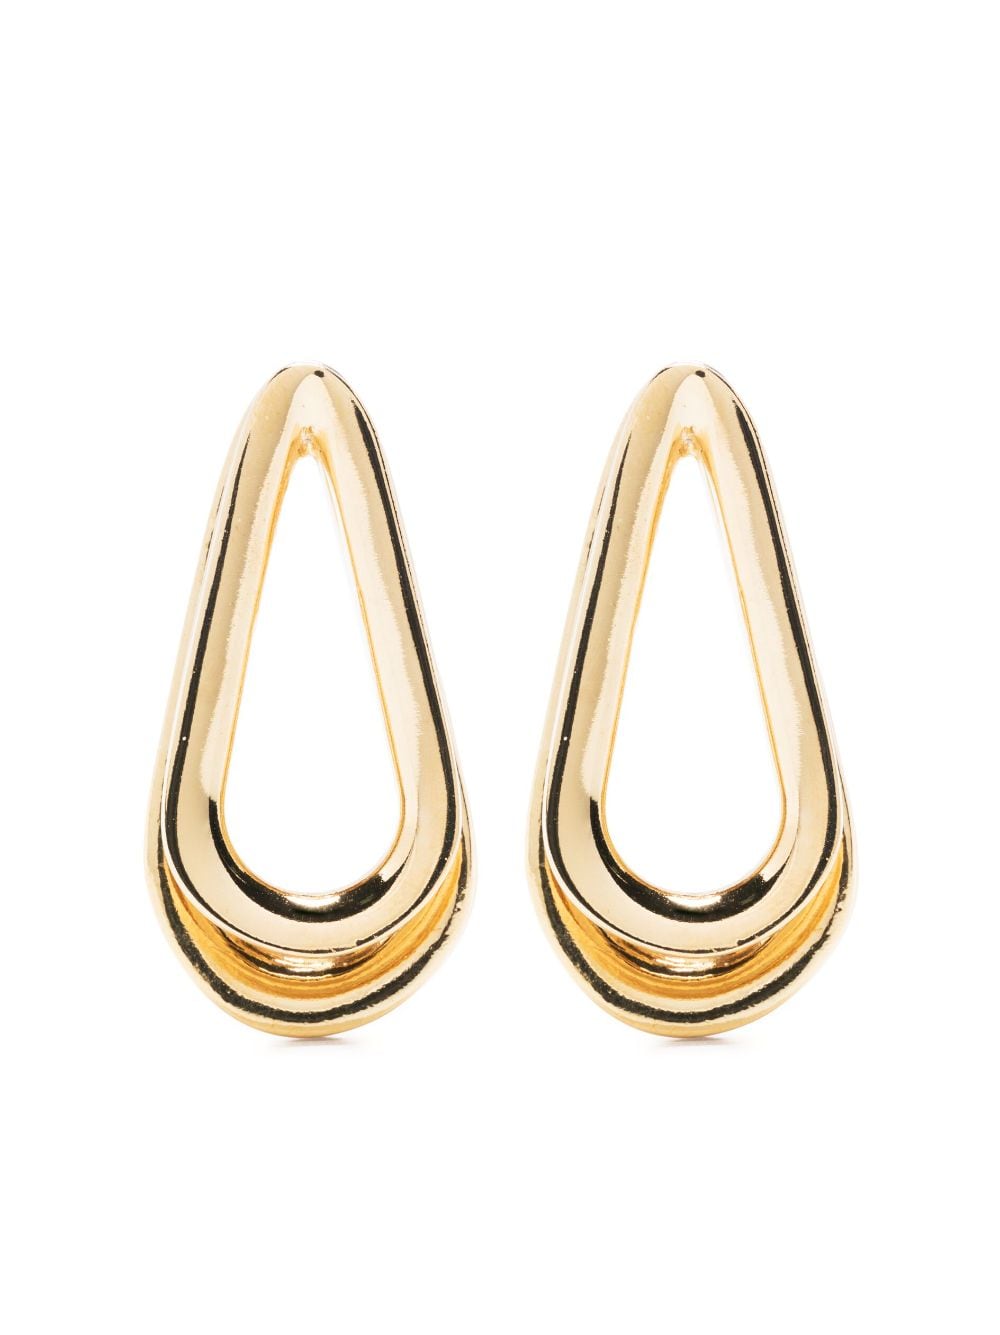 Ellipse S Double earrings